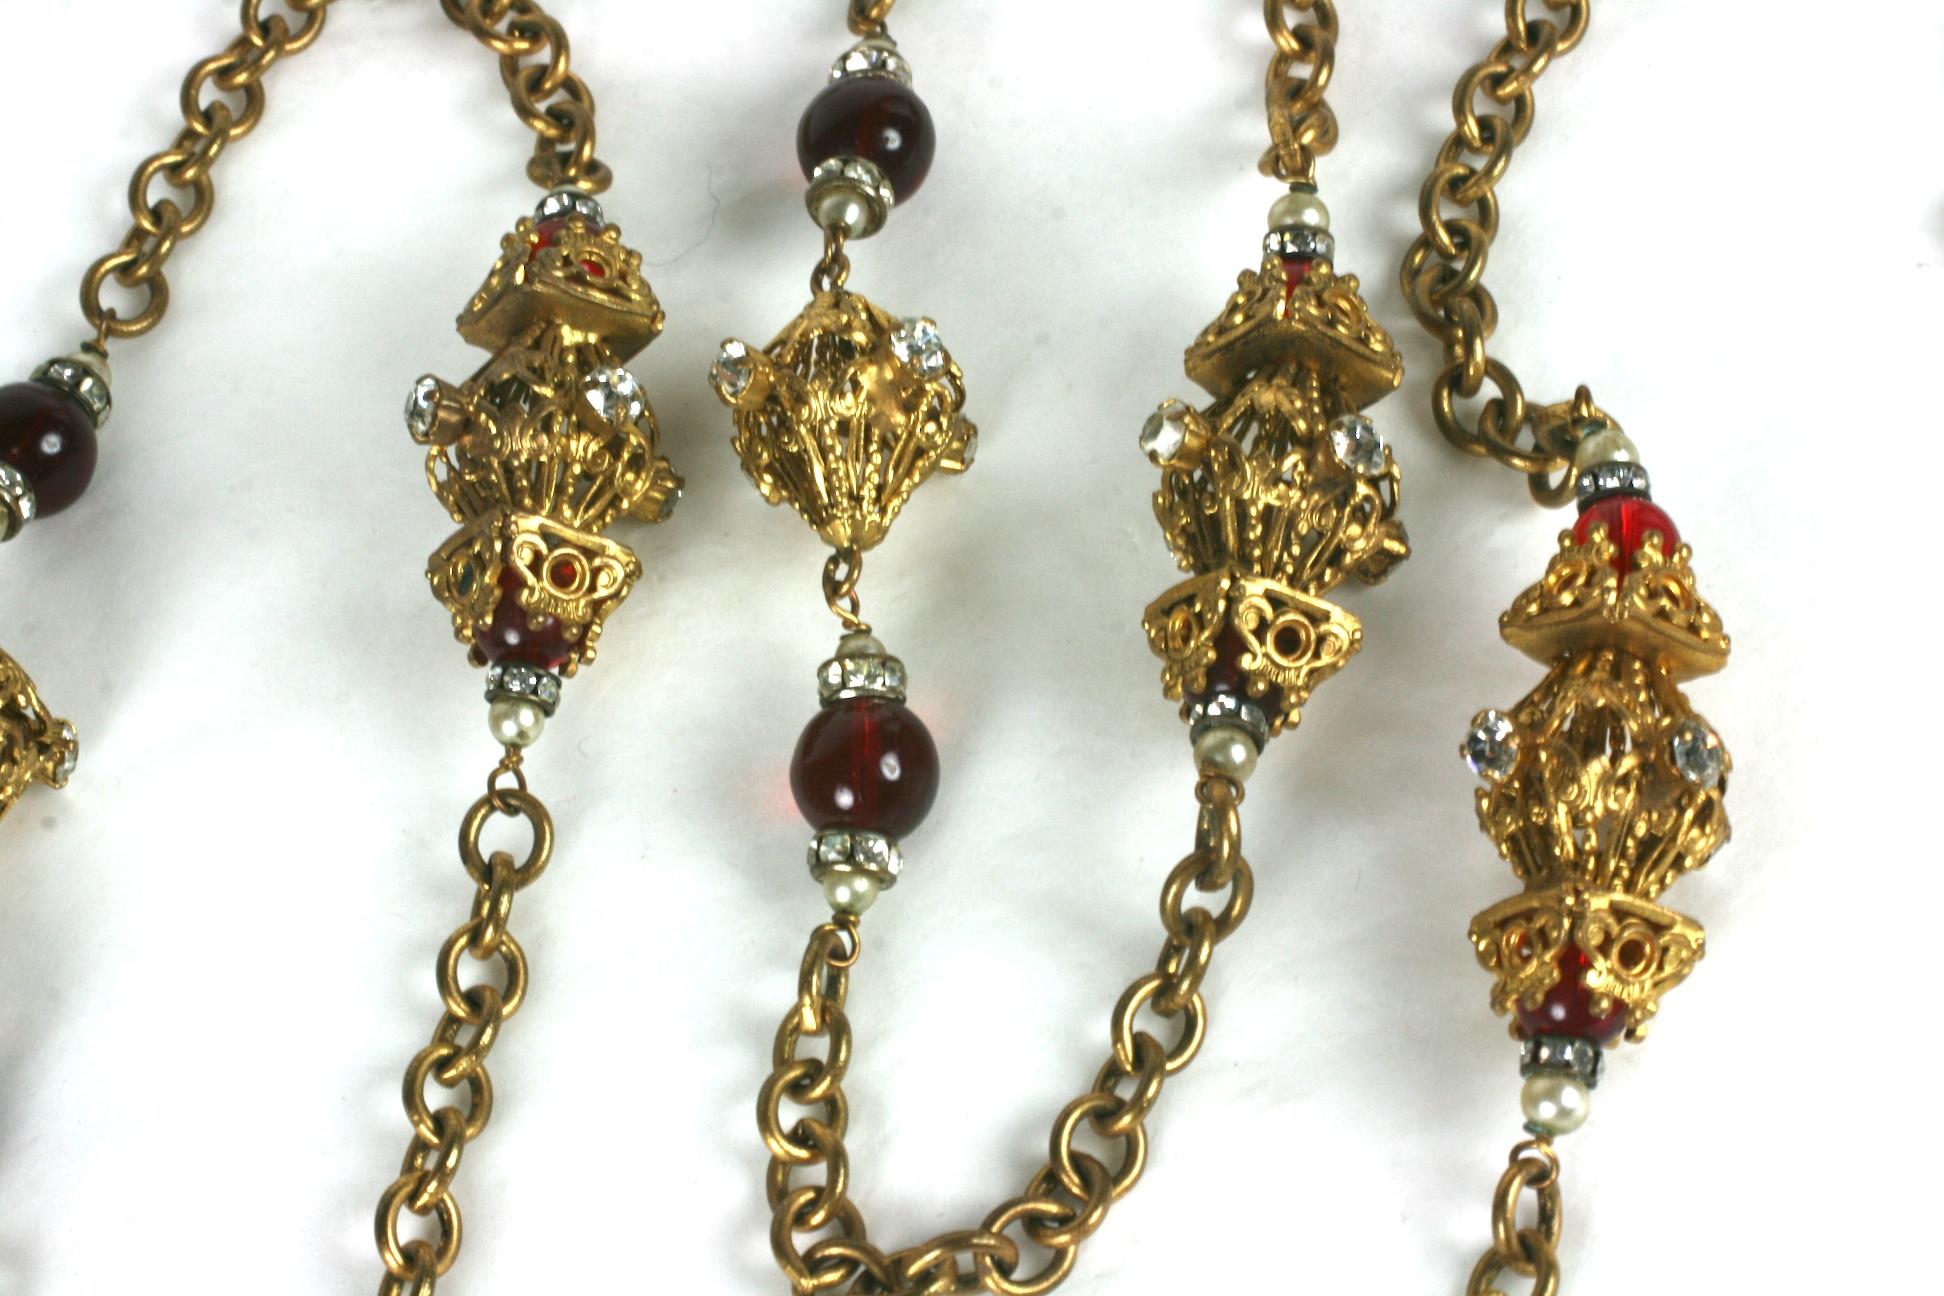 Frühes CoCo Chanel Sautoir von Robert Goossens, inspiriert von der Renaissance, bestehend aus Perlen aus rubinrotem Pate de Verre, flankiert von Rondellen aus Brillantkristallen und kleinen Kunstperlen. Es gibt vergoldete filigrane Laternenstationen